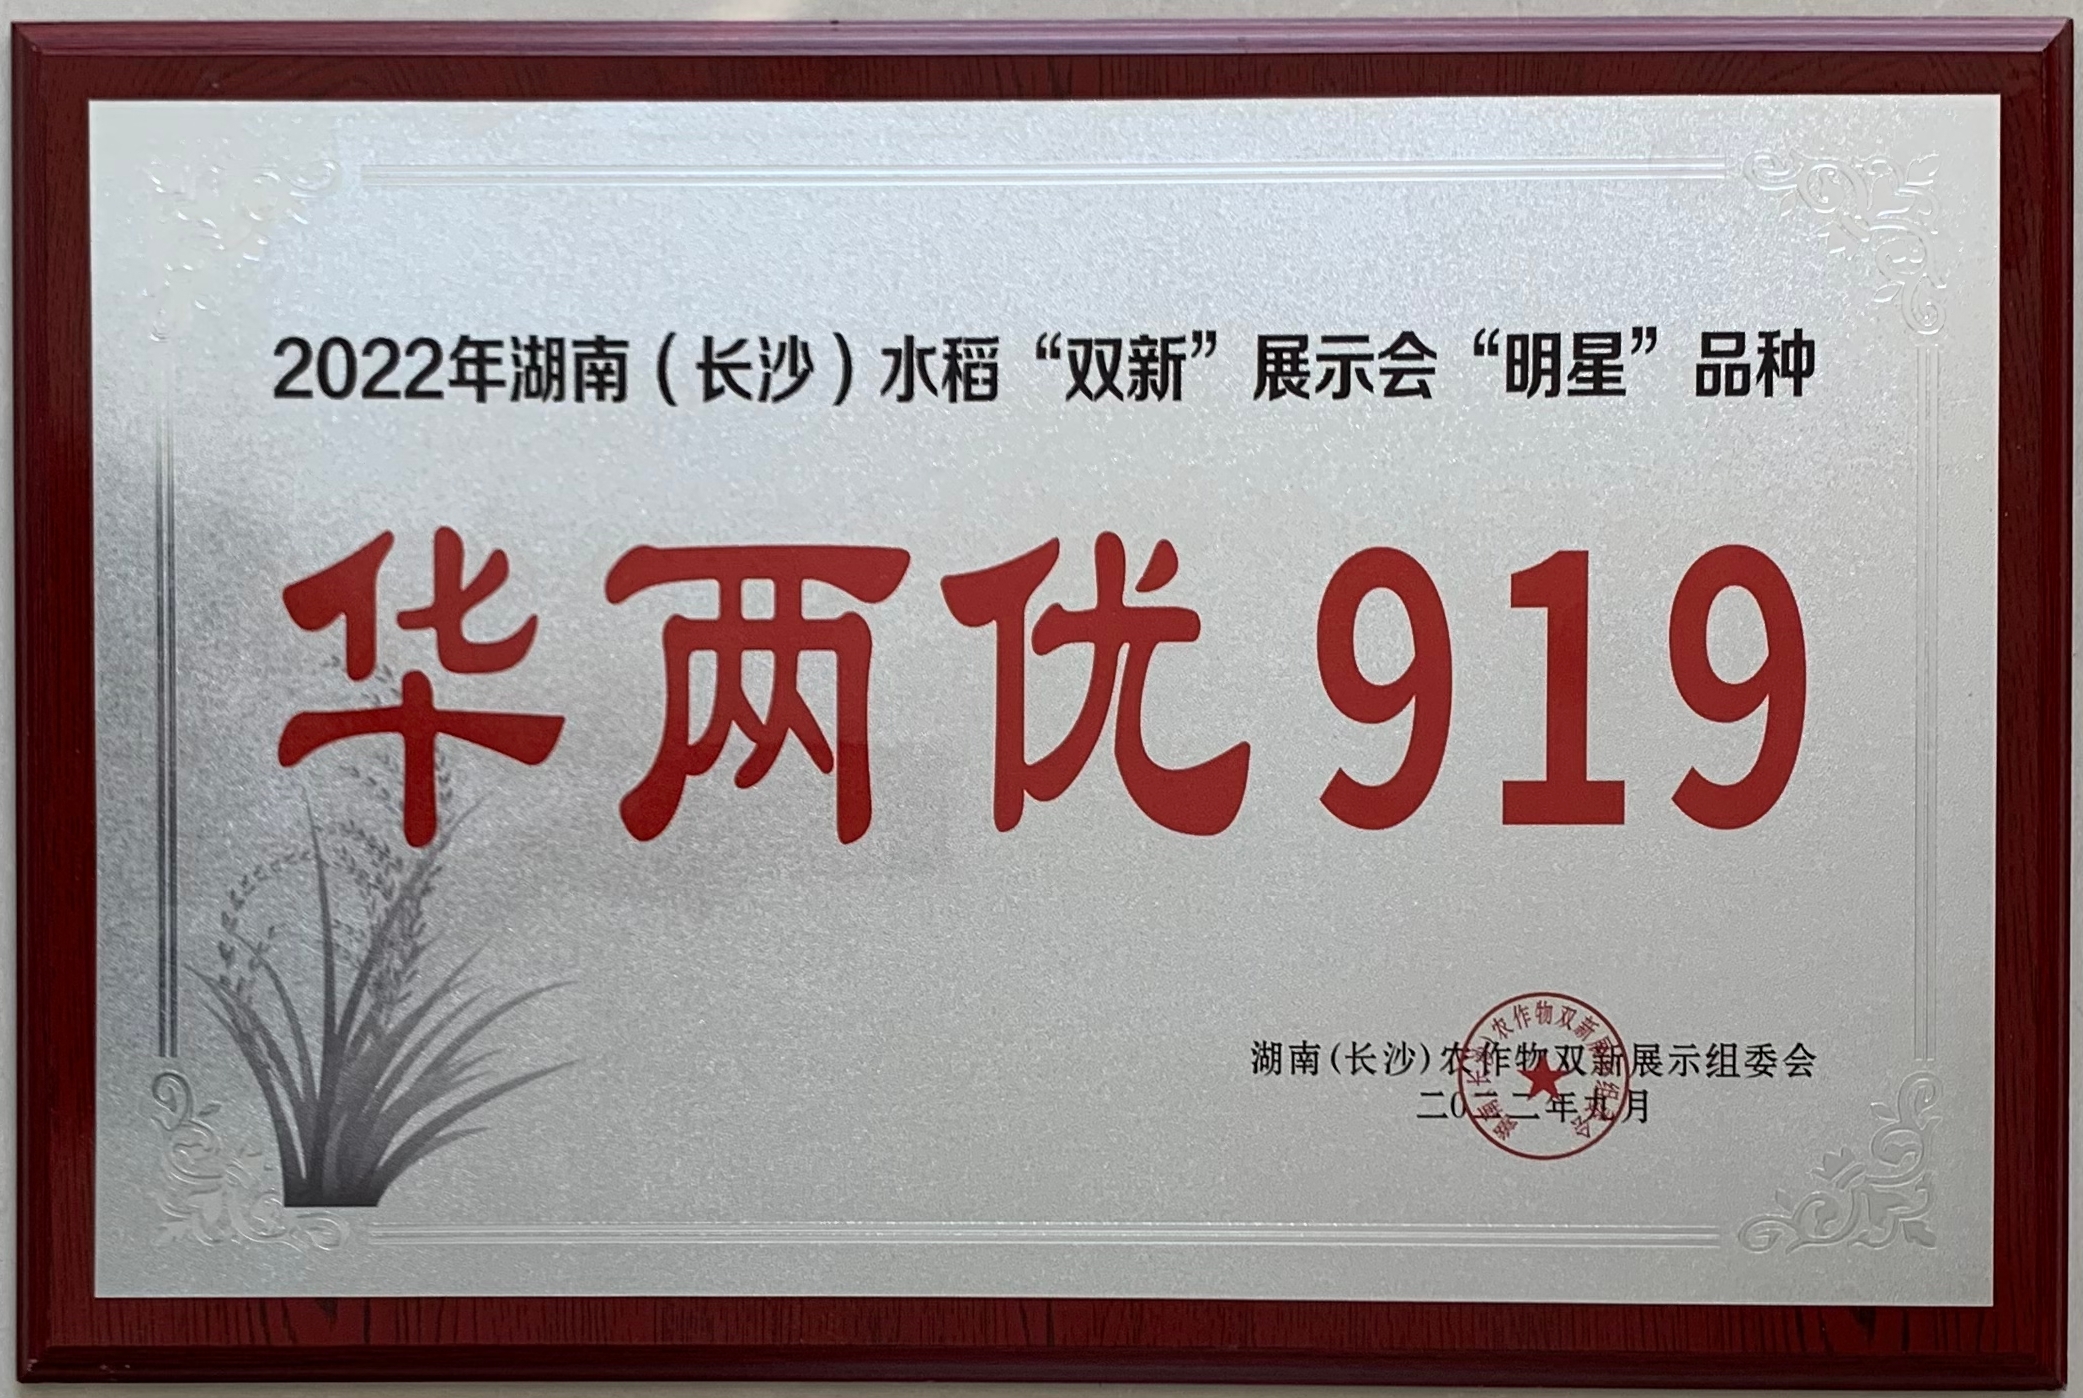 202209湖南双新展示明星品种-华两优919.jpg